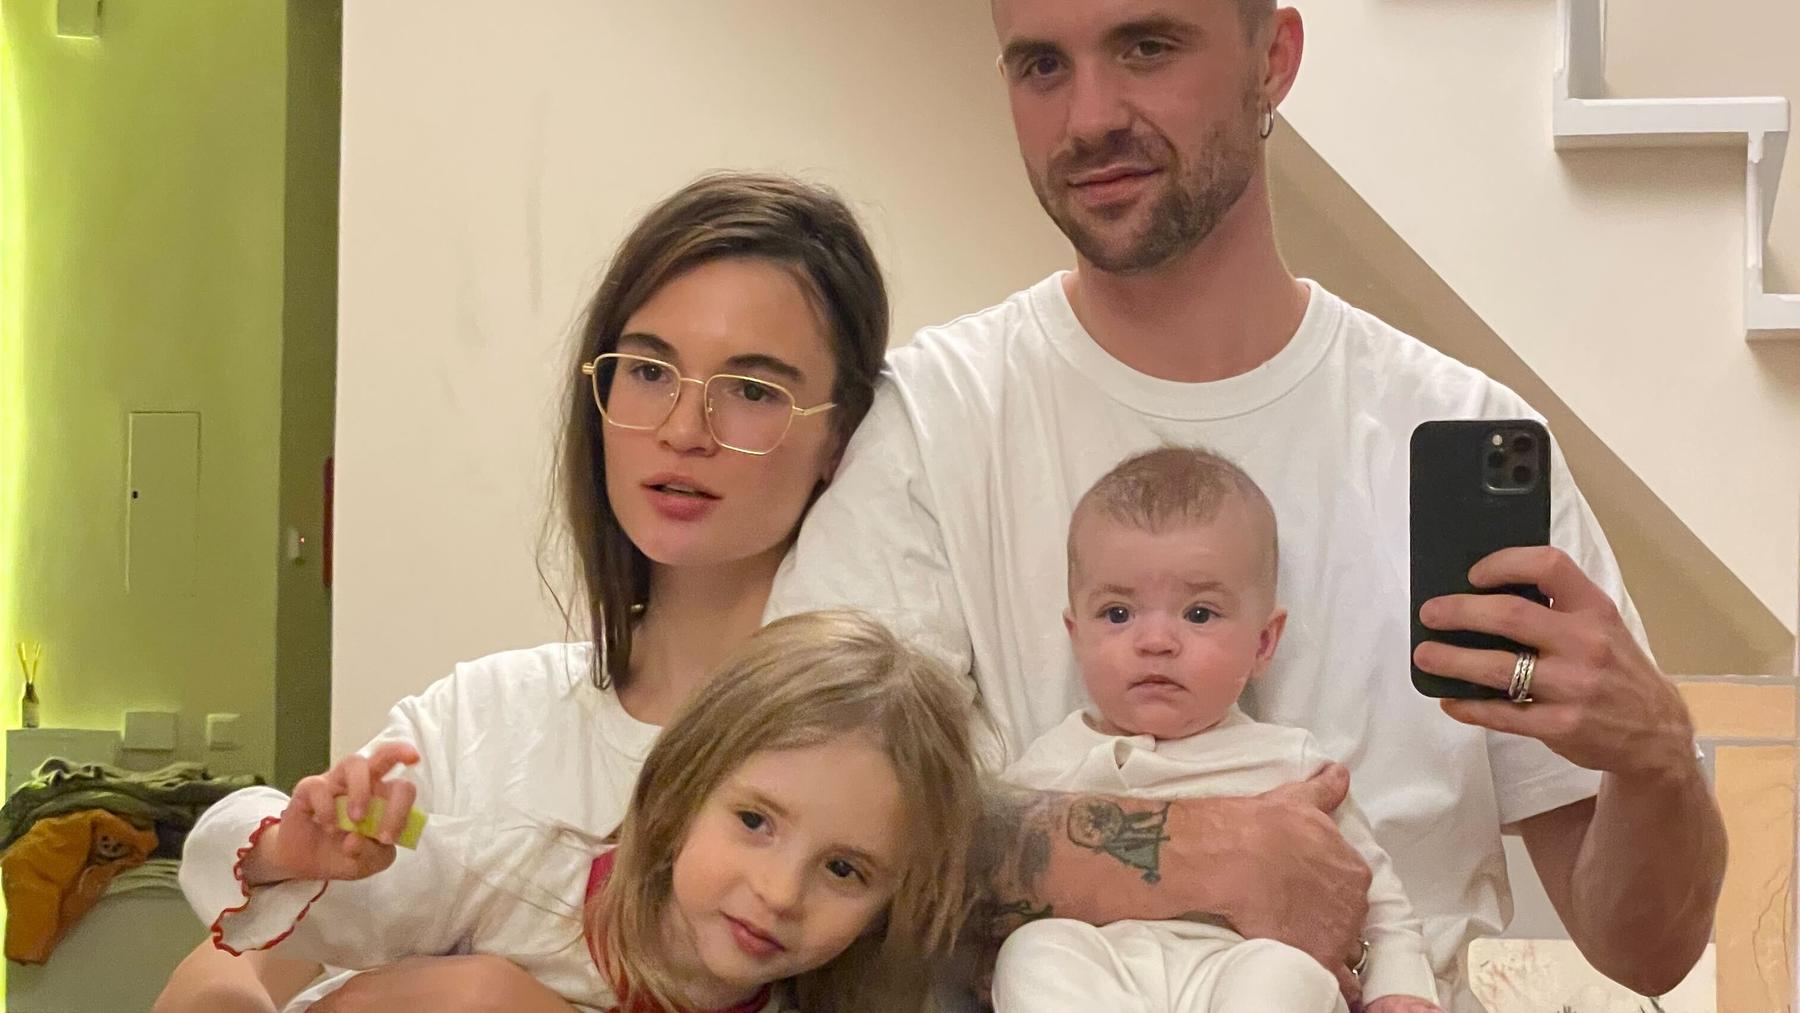 Misha Katsurin mit seiner Frau und seinen zwei Kindern, die mittlerweile weiter nach Portugal geflüchtet sind.